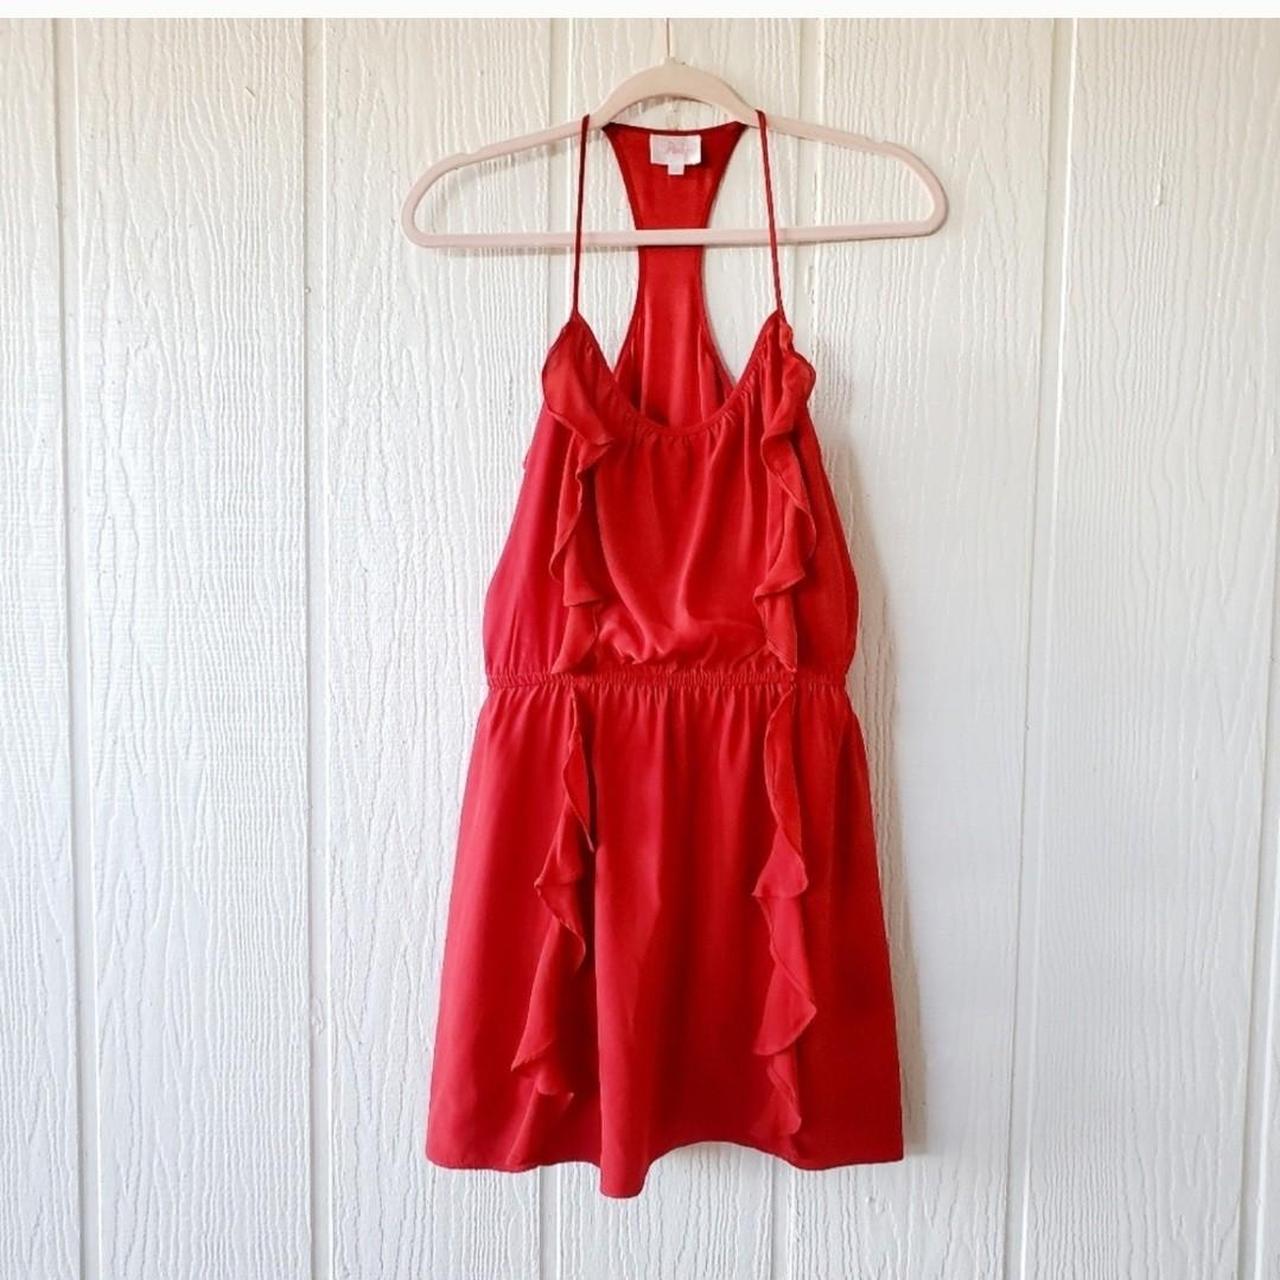 Parker Women's Red Dress | Depop